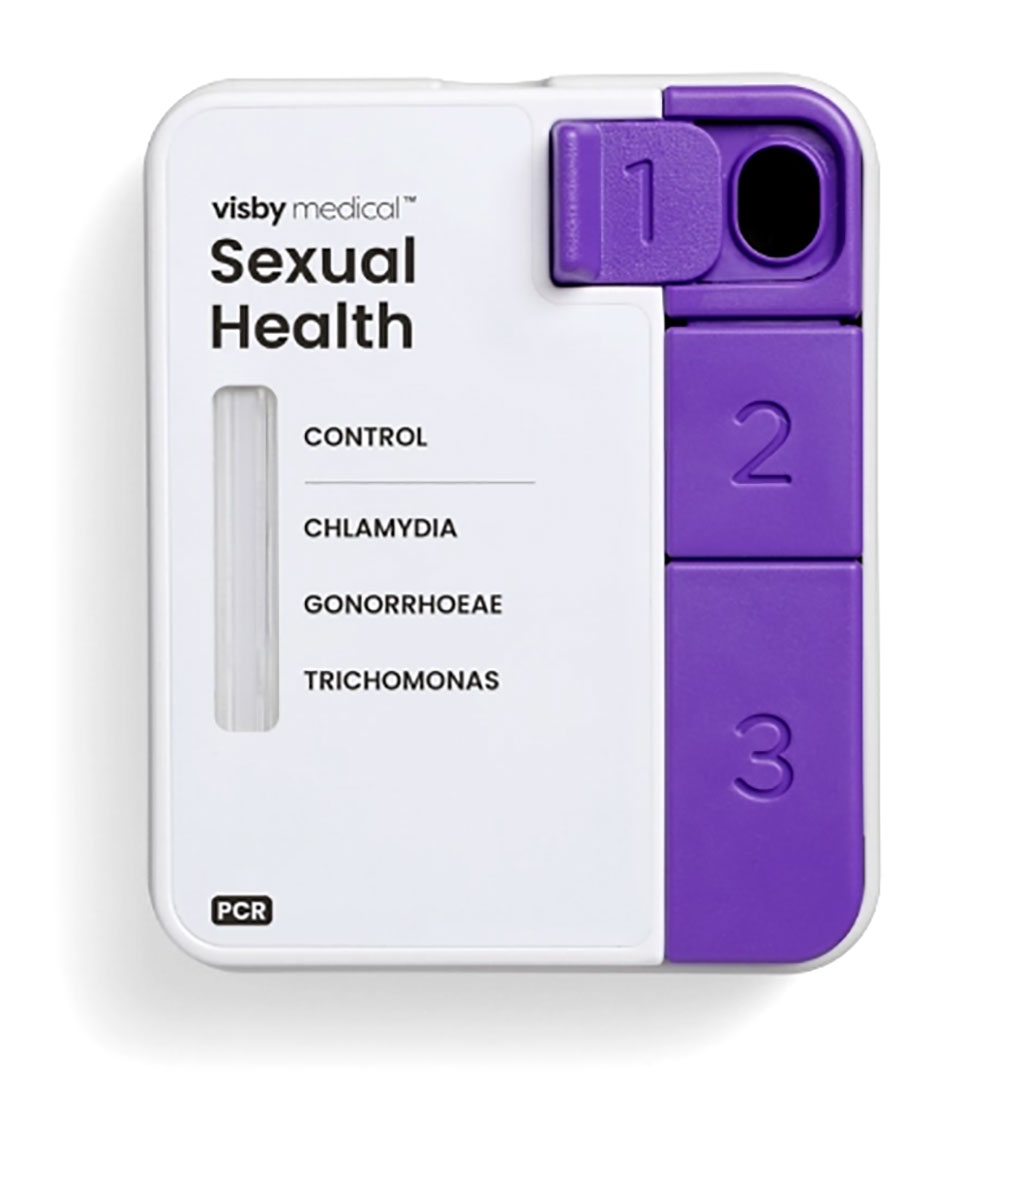 Imagen: Prueba Sexual Health Click (Fotografía cortesía de Visby Medical)